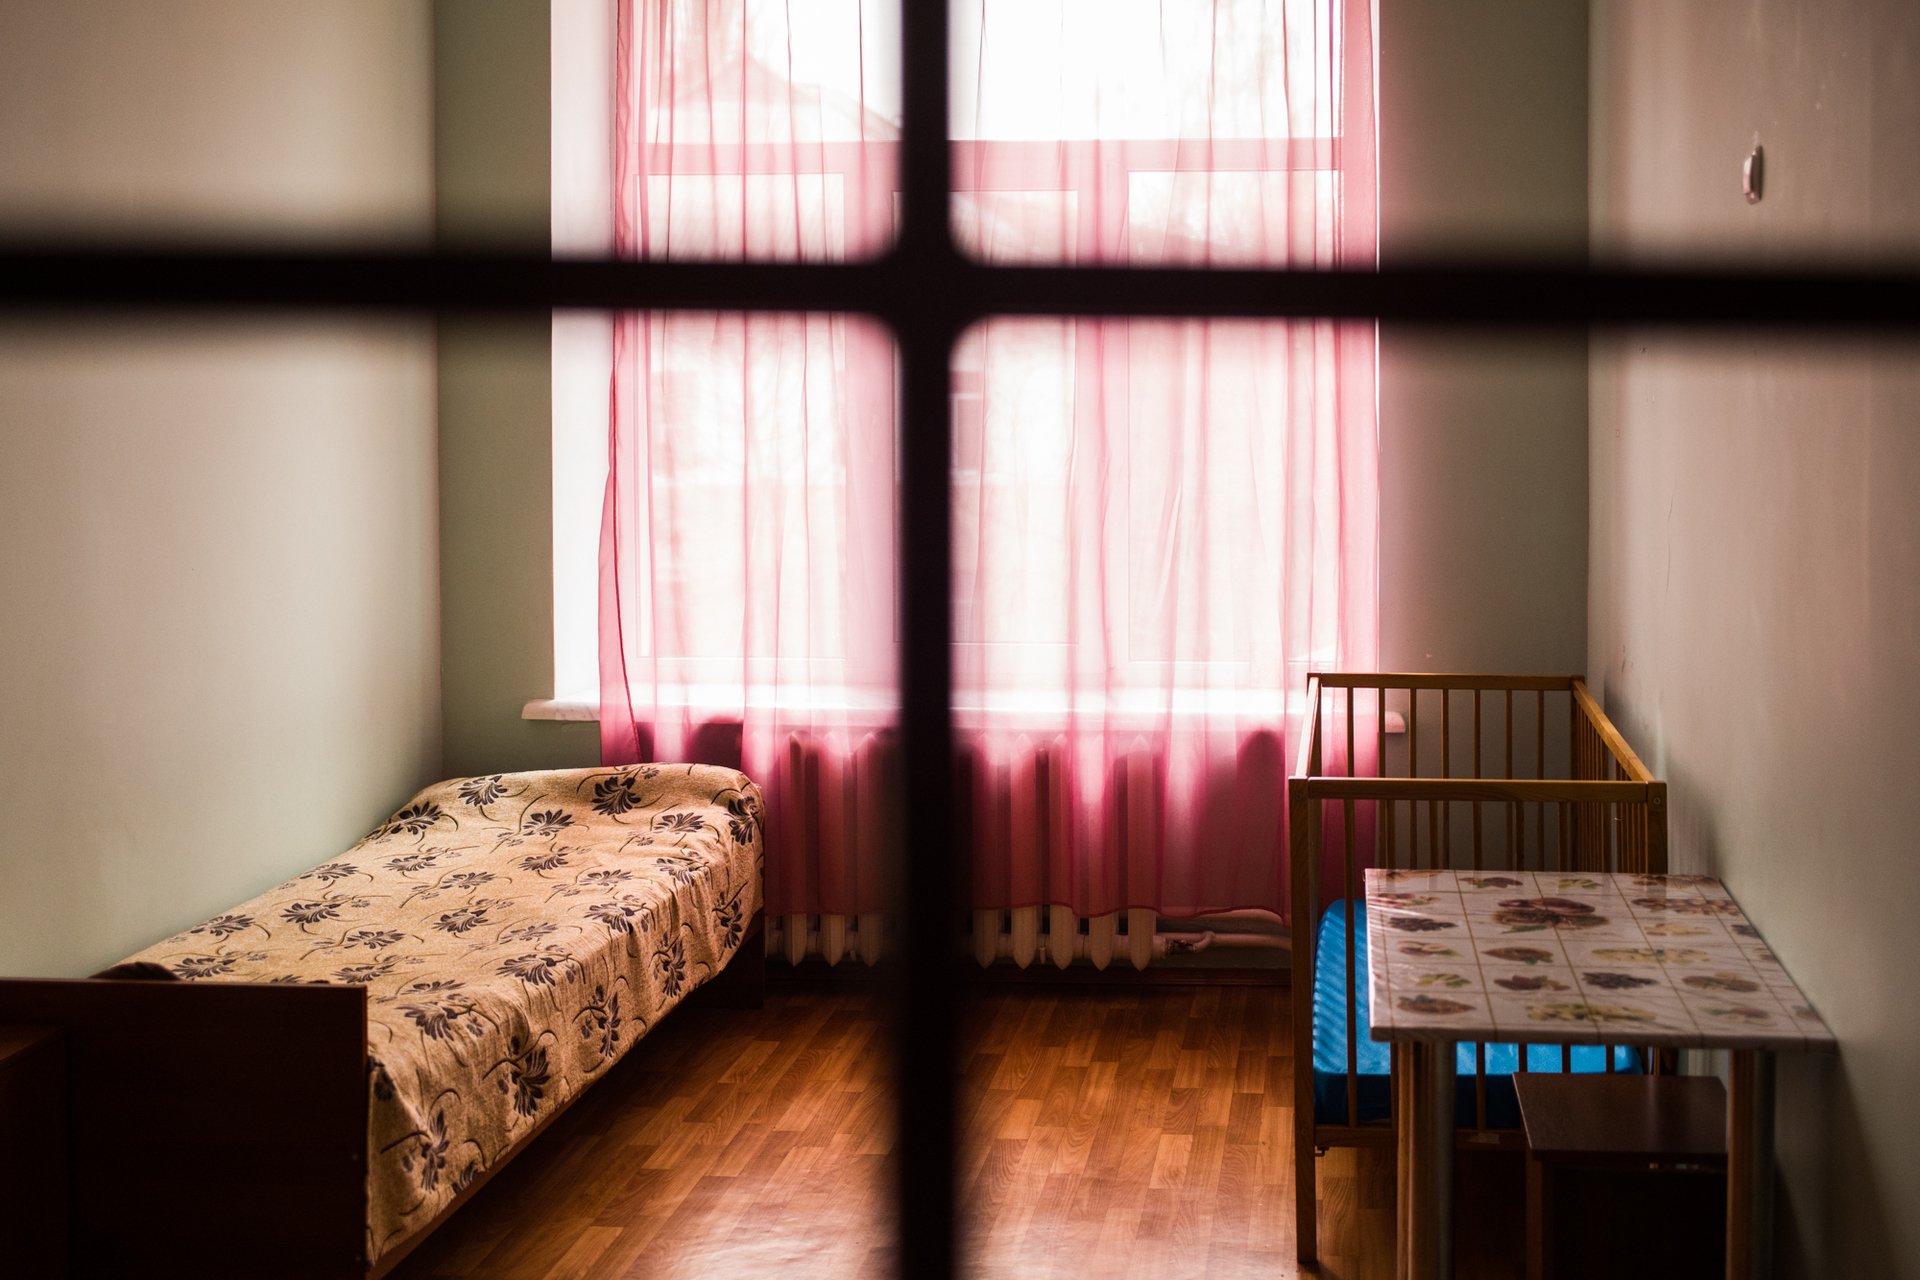 "Женщина в тюрьме — это табу и позор семьи" — фотопроект Миши Фридмана